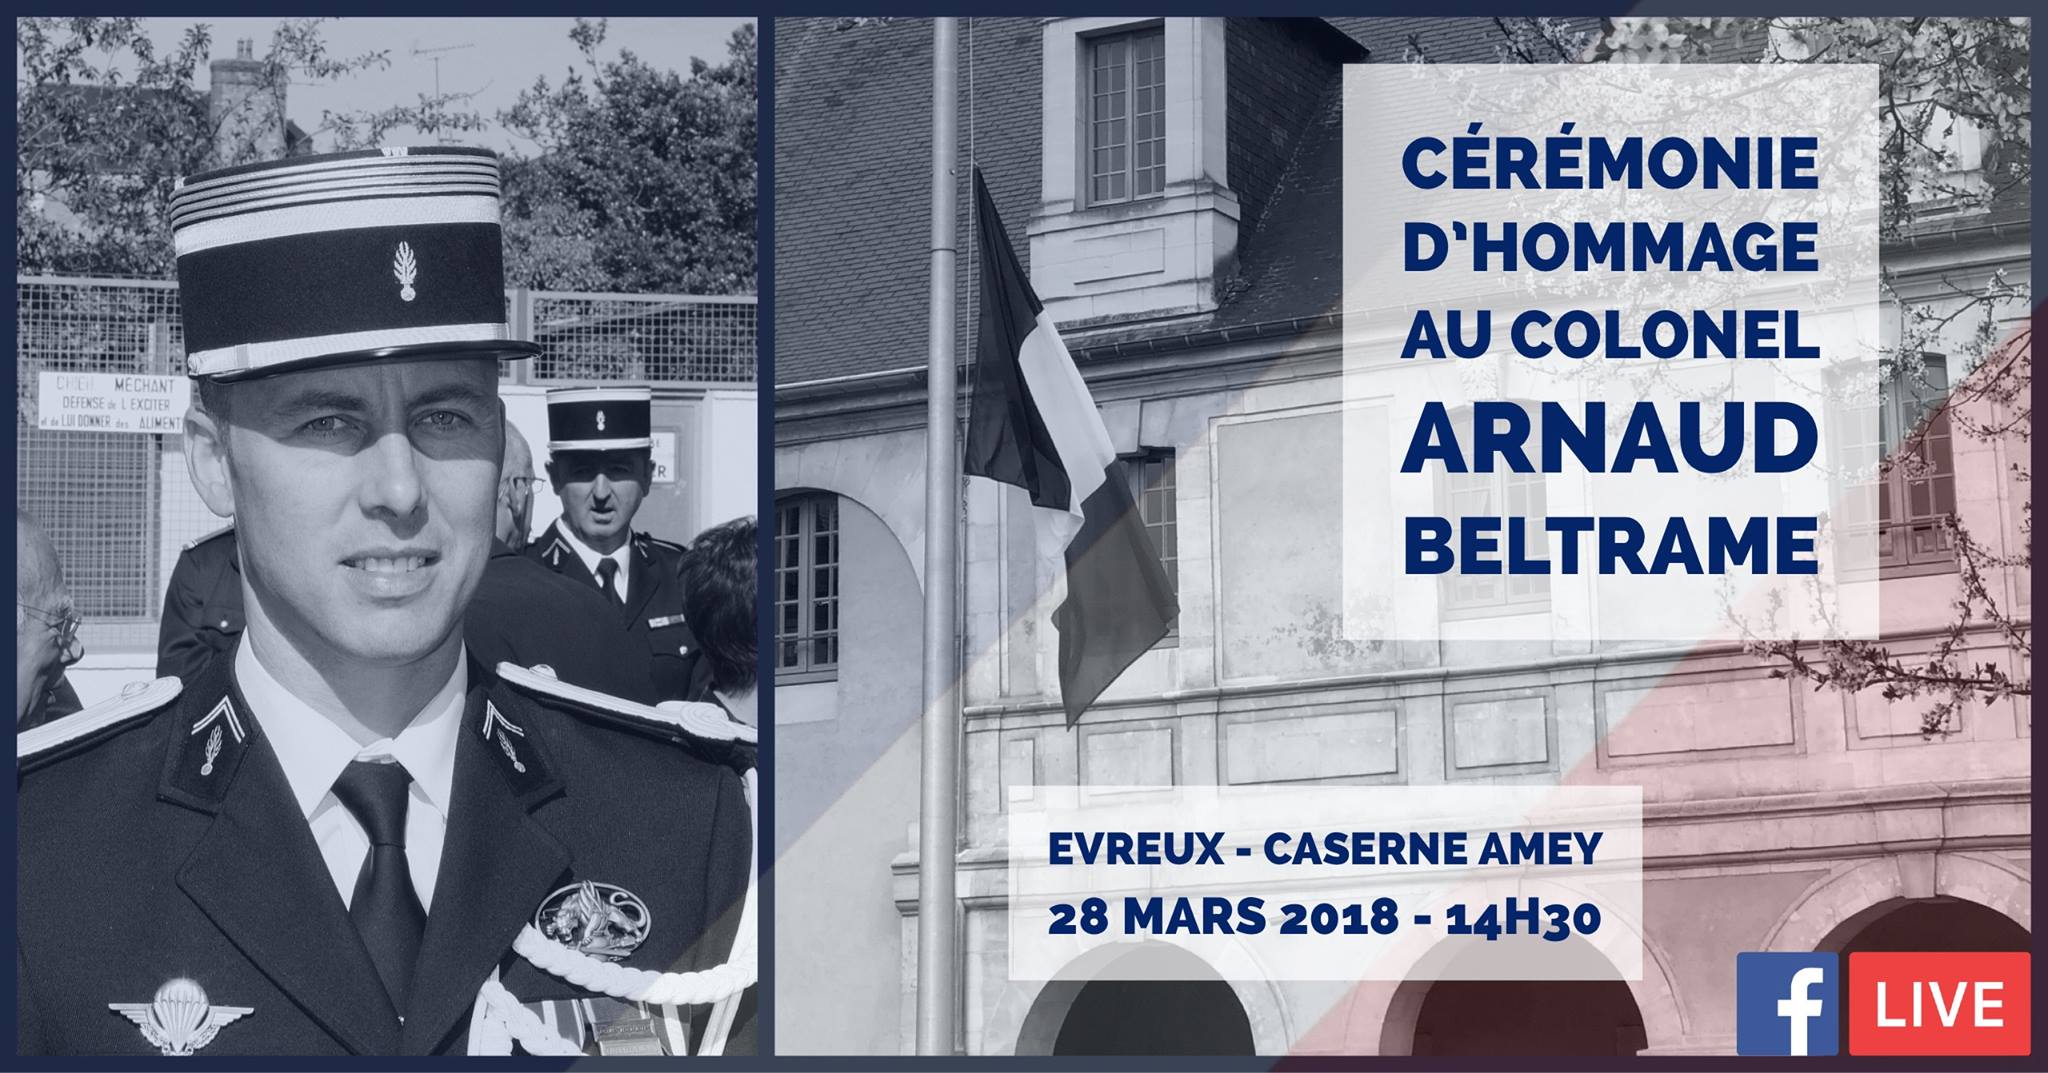 (Document © Gendarmerie de l'Eure /Facebook)